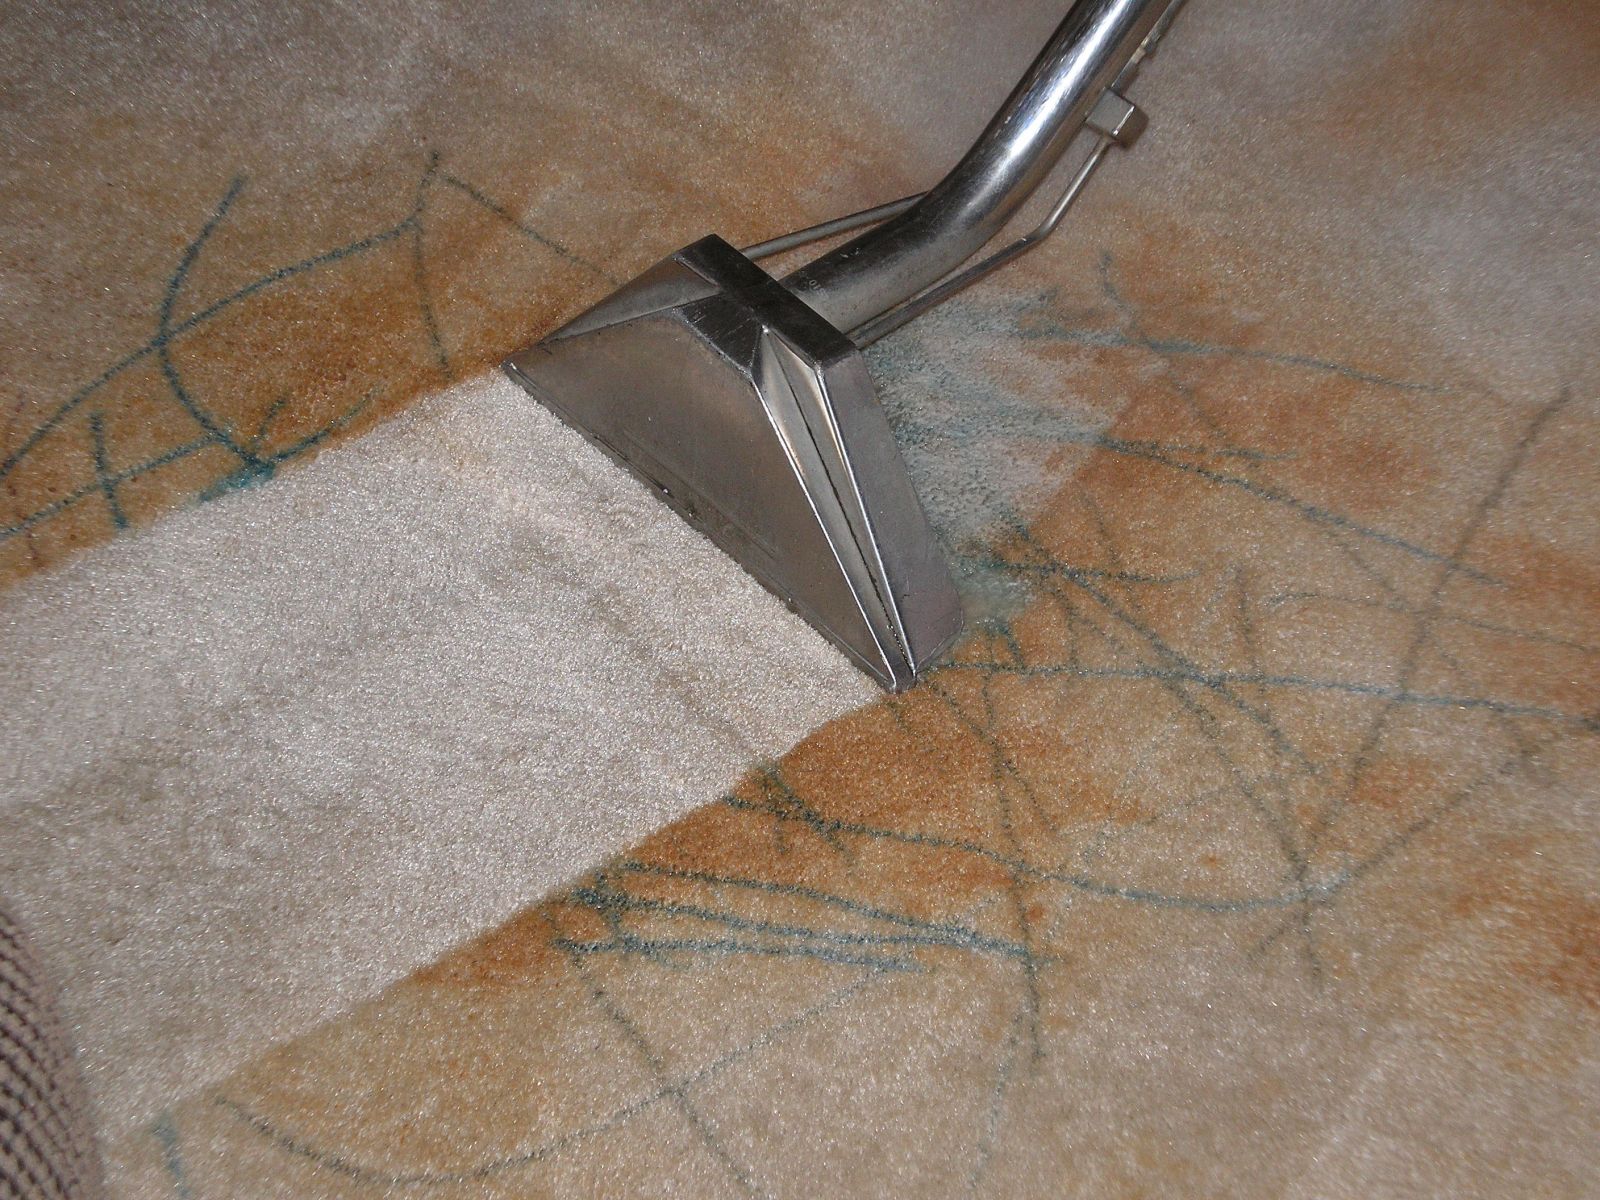 commercial carpet cleaning fairfax va , commercial carpet cleaning stafford va 22556, carpet stretching fairfax va